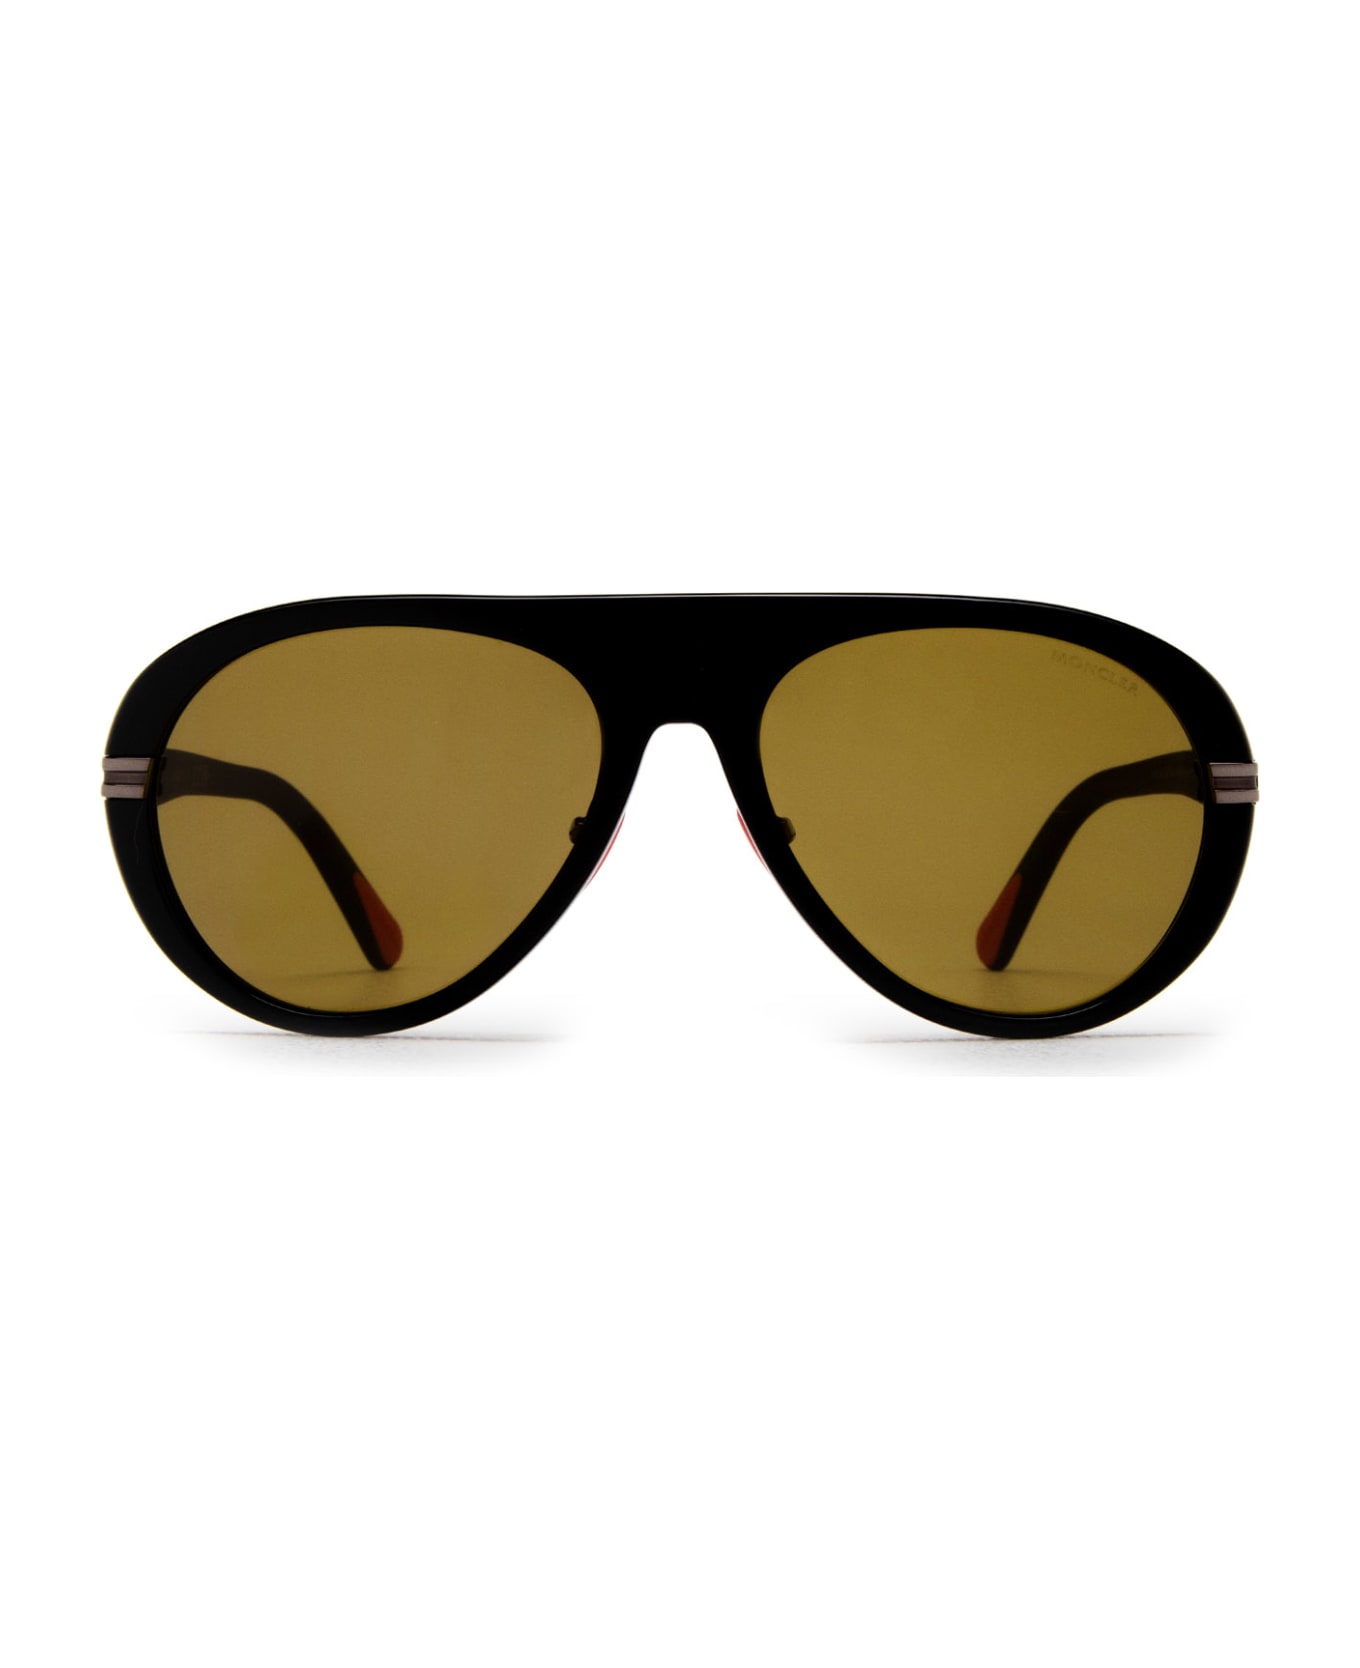 Moncler Eyewear Ml0240 Shiny Black Sunglasses - Shiny Black